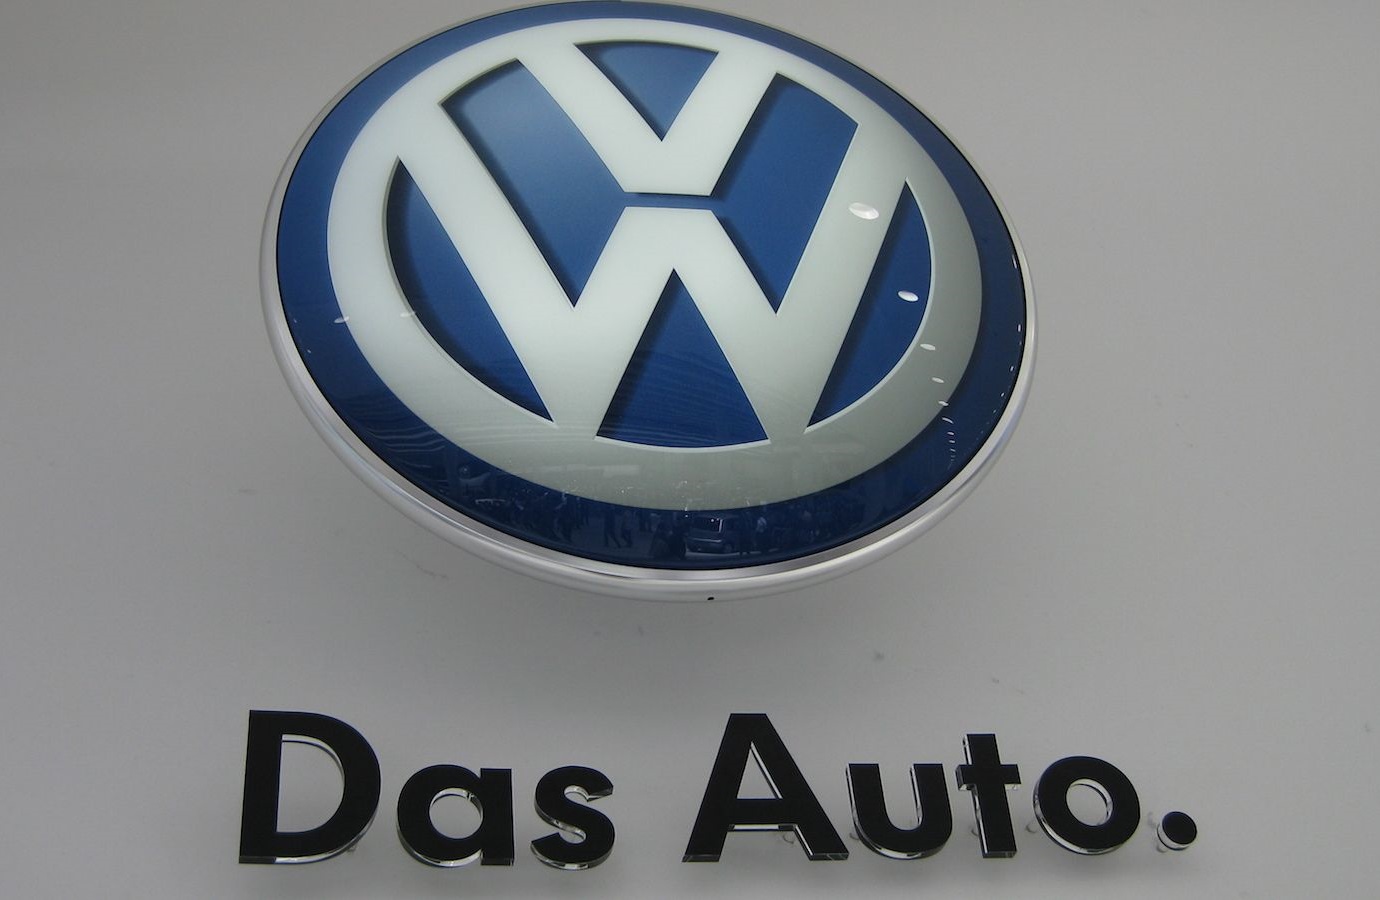 Volkswagen từng bước thay đổi sau vụ bê bối khí thải